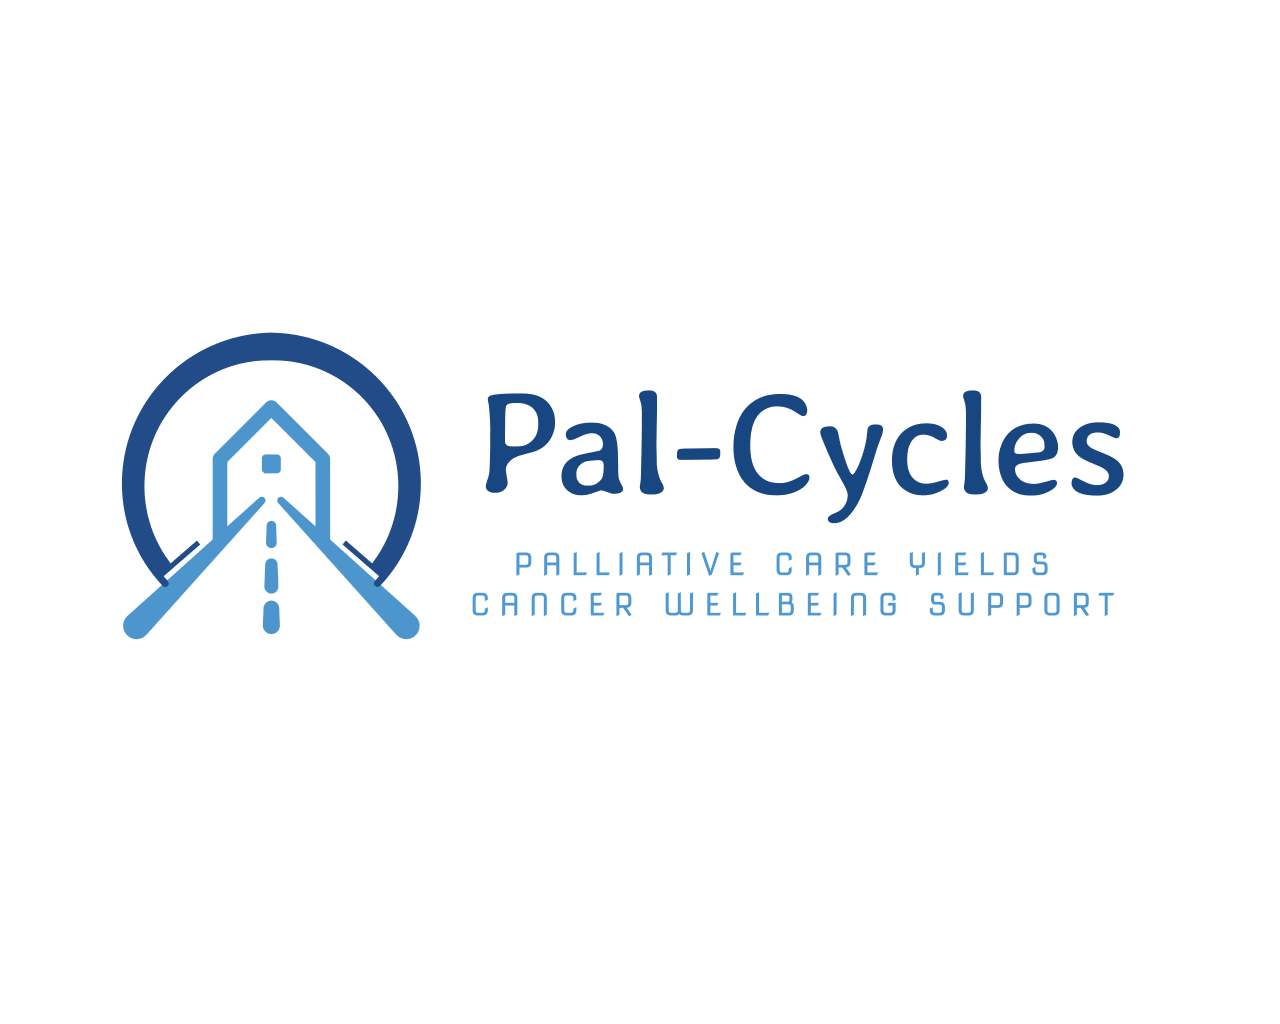 pal-cycles logo